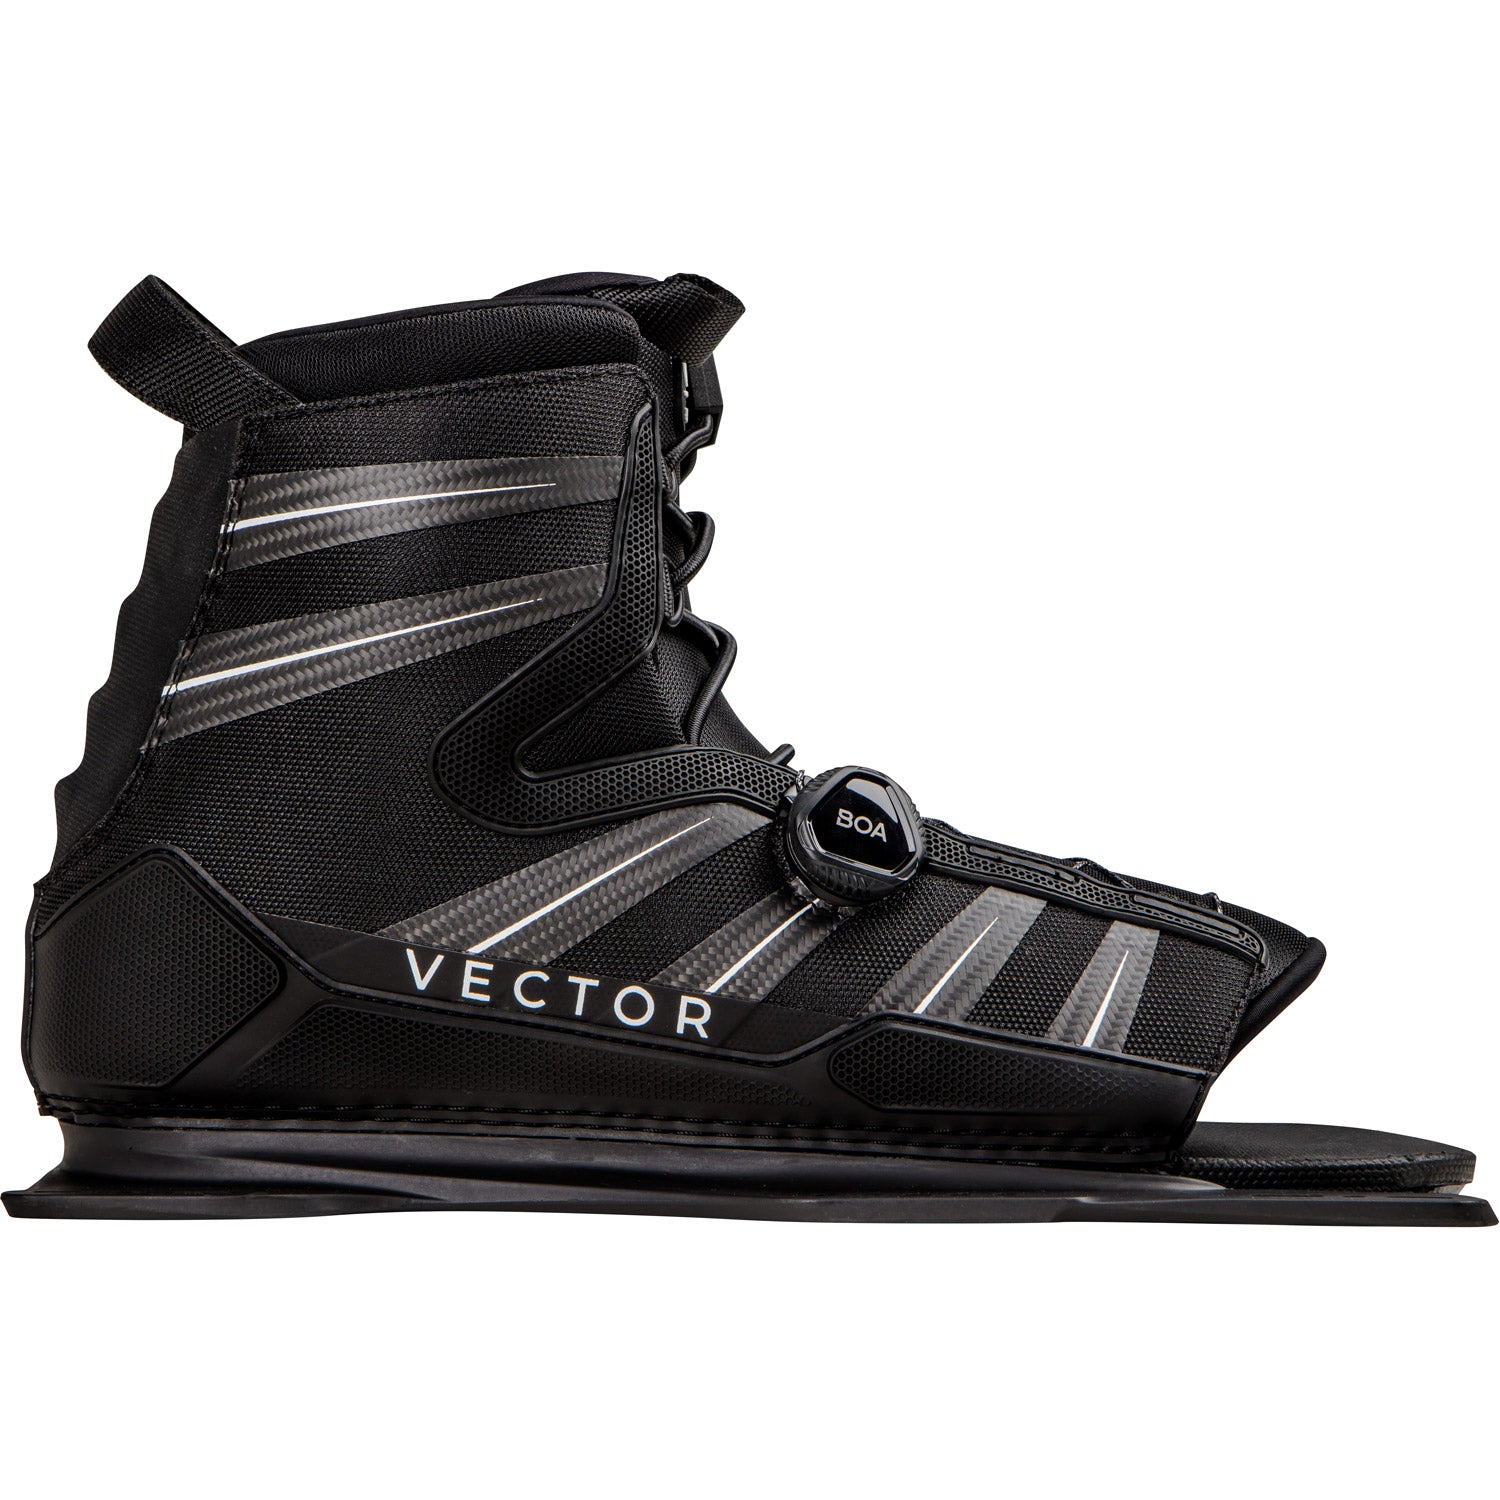 Vector BOA Slalom Ski Boot